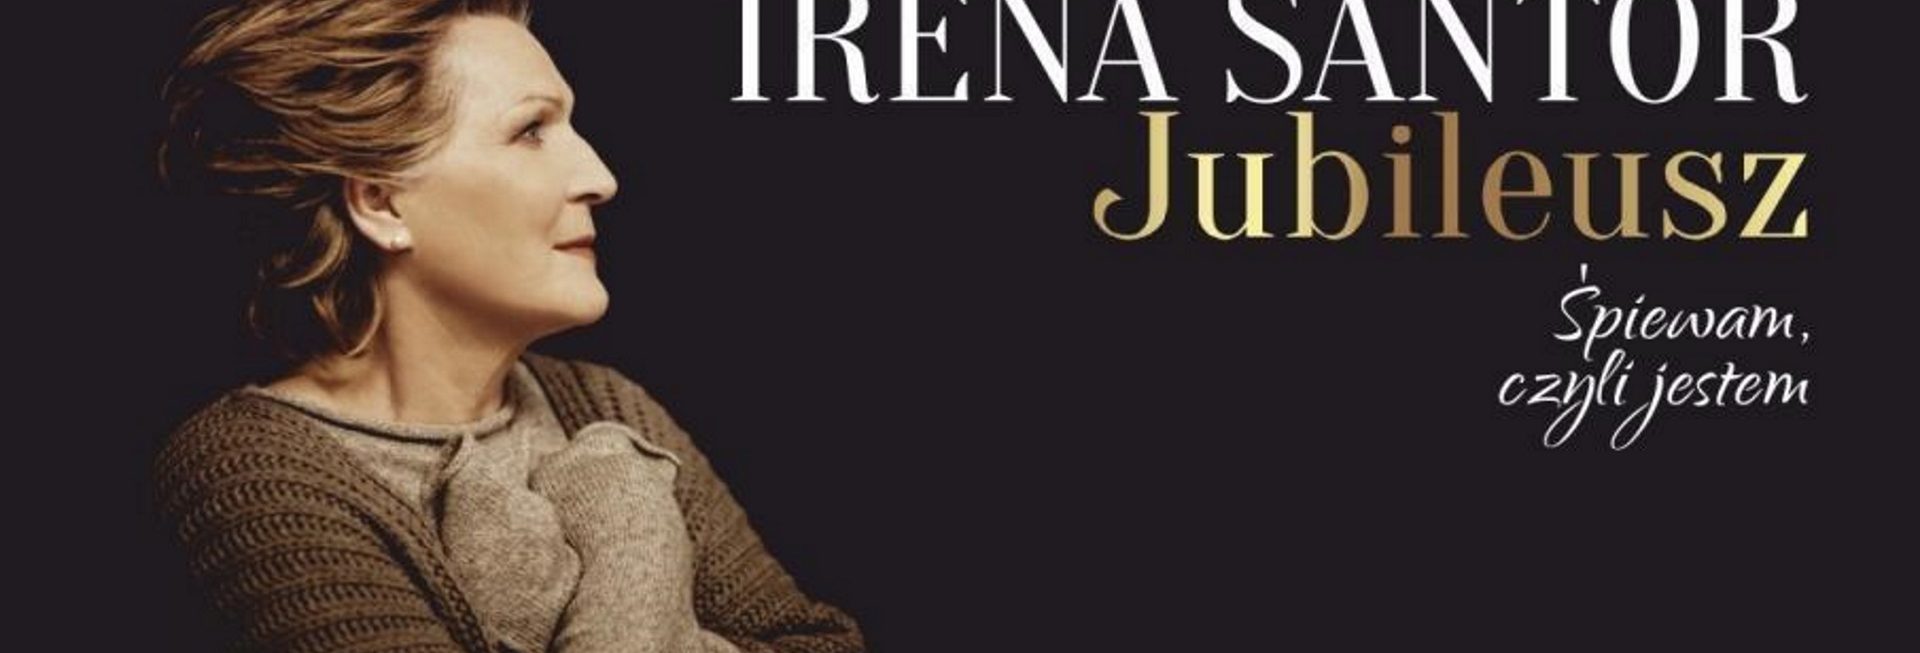 Zdjęcie - plakat na którym jest widoczna na czarnym tle postać piosenkarki Ireny Santor oraz napis informacja zapraszający na koncert Jubileusz Śpiewam czyli jestem 